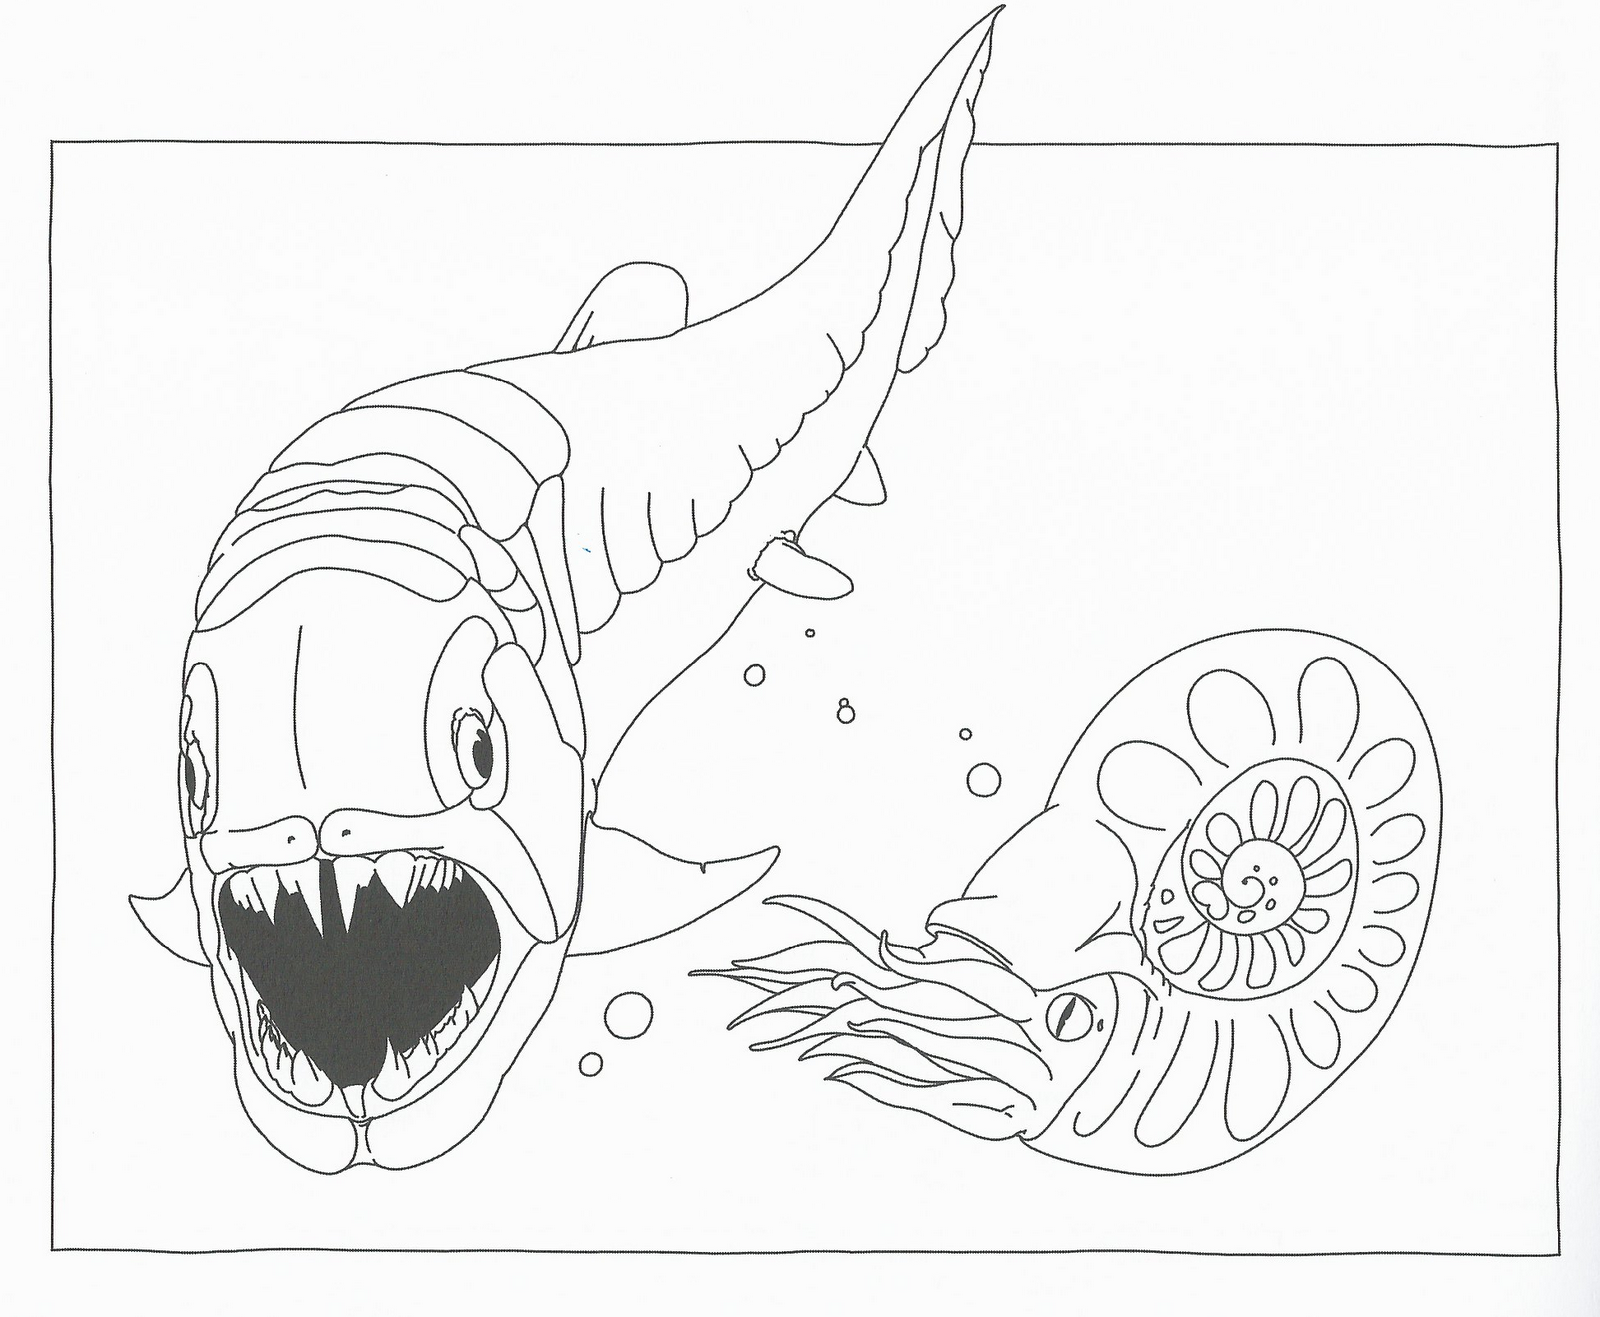 Disegni da colorare disegni da colorare i dinosauri for Disegni pesci da colorare e stampare per bambini